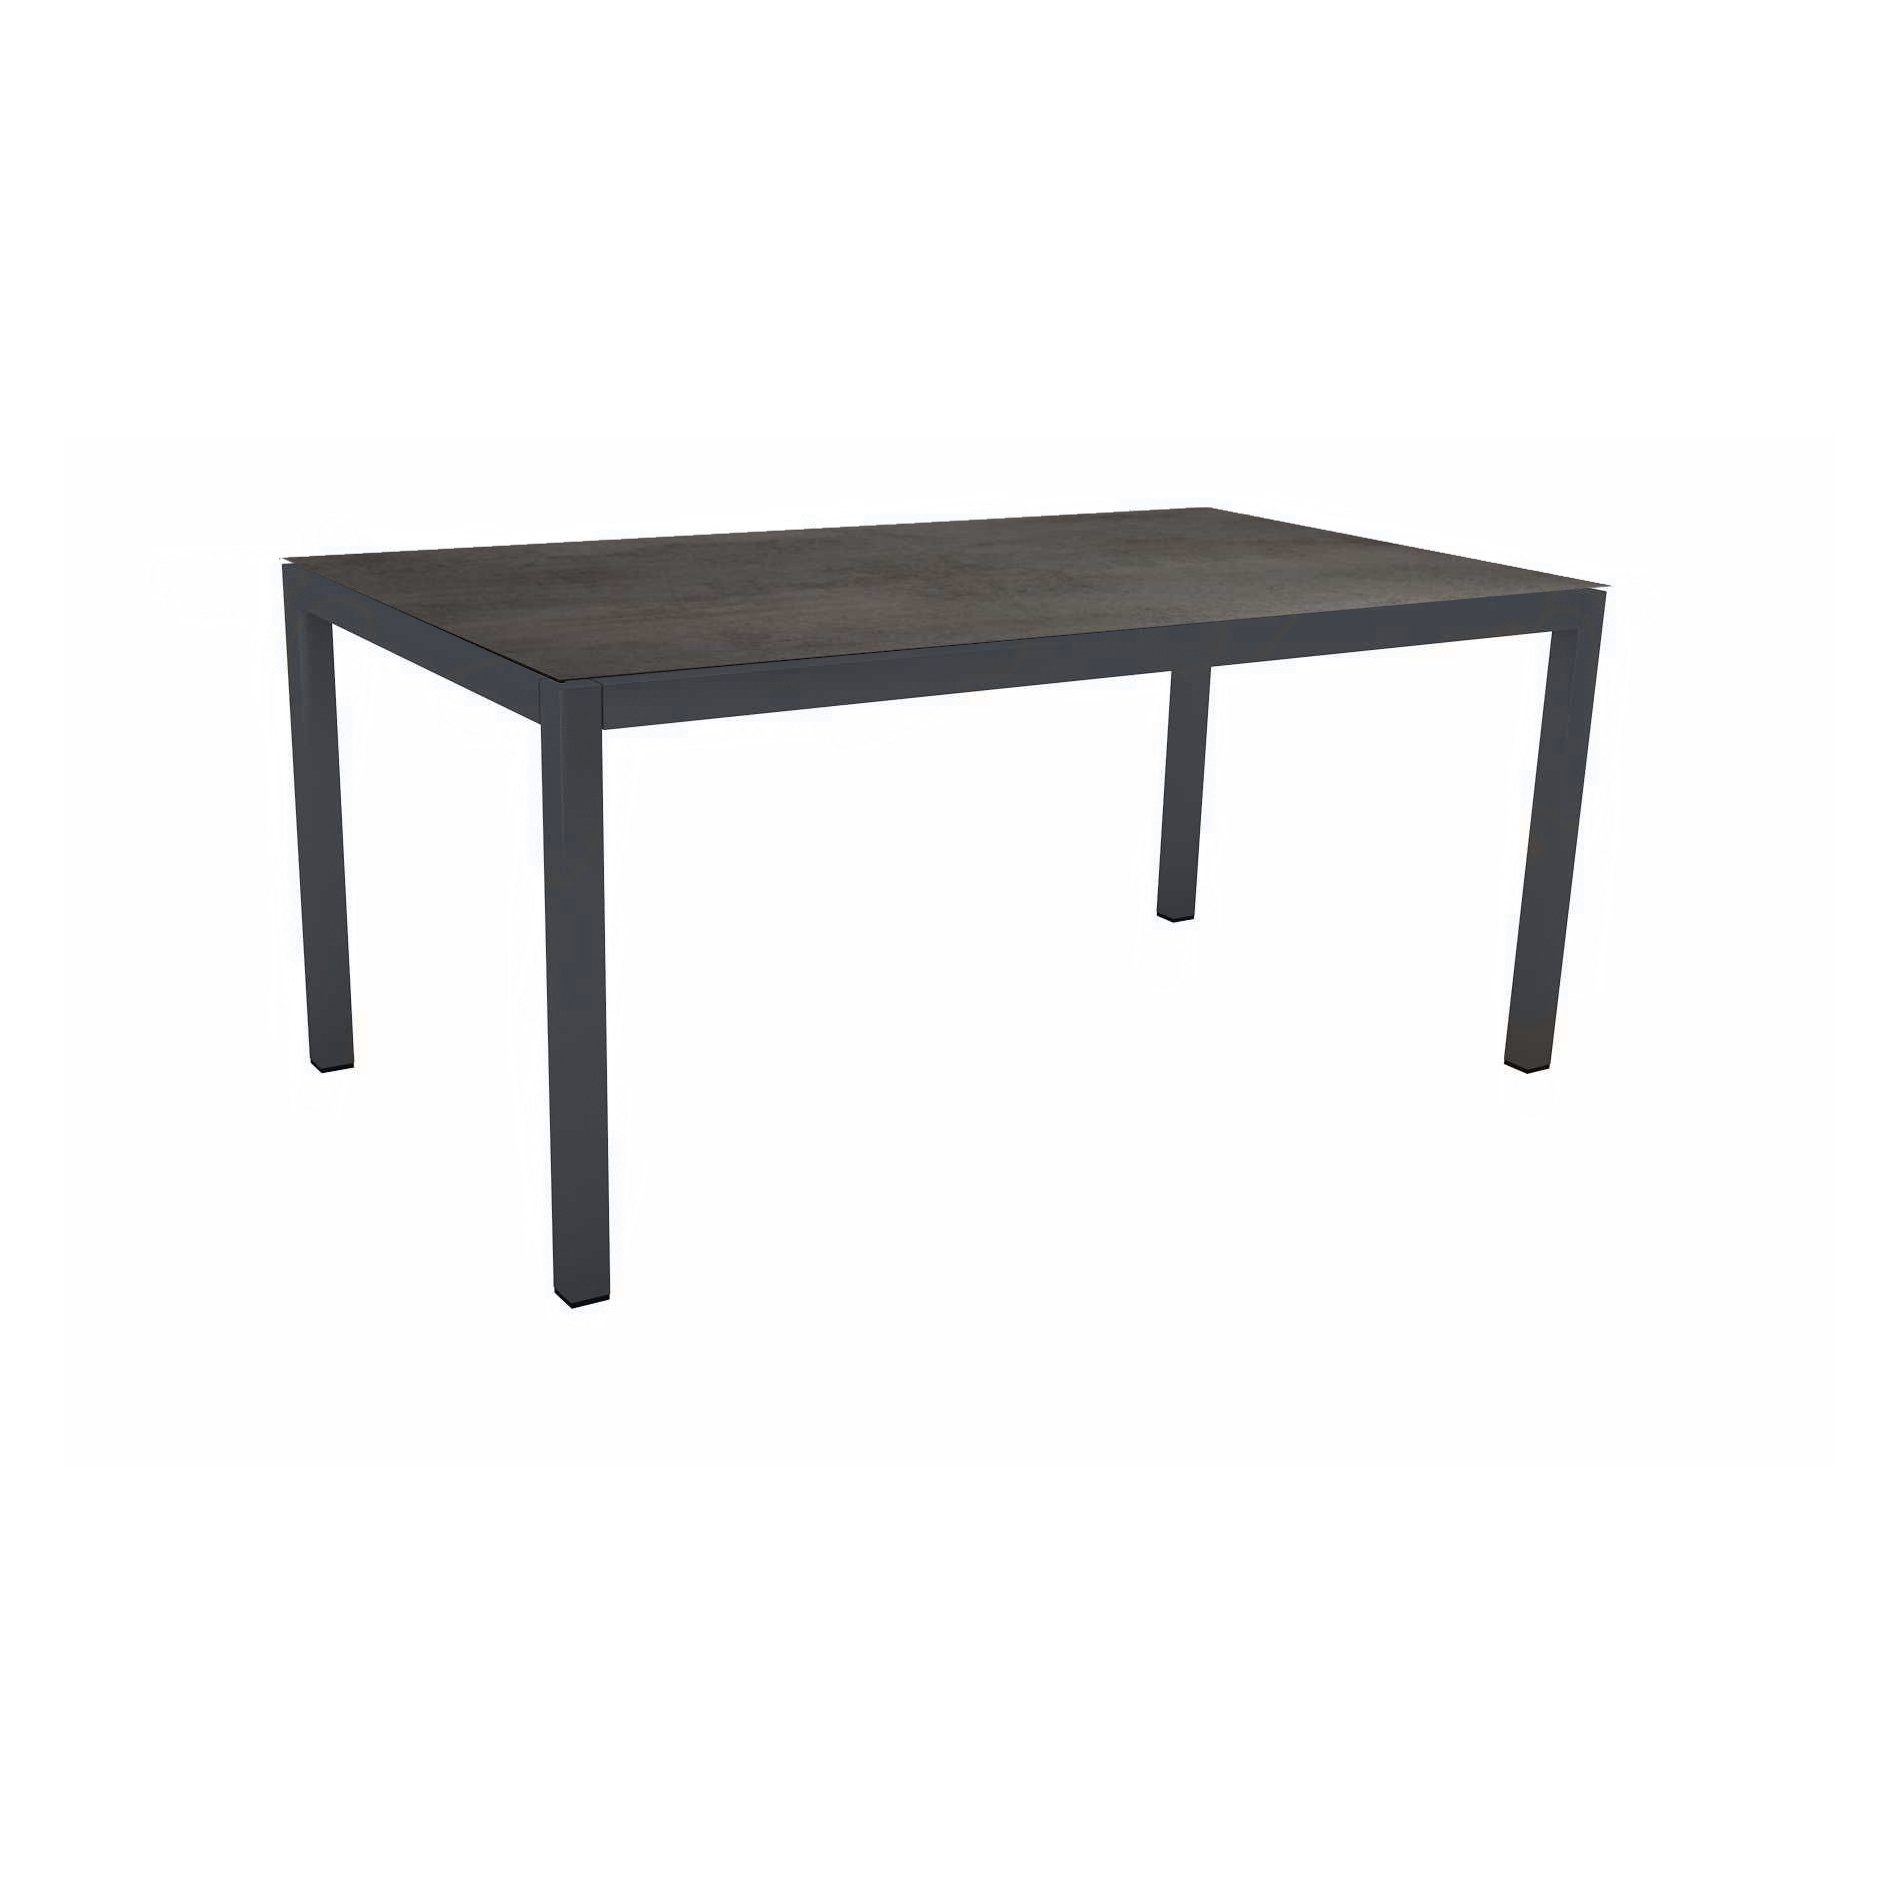 Stern Tischsystem Gartentisch, Gestell Aluminium anthrazit, Tischplatte HPL Nitro, Maße: 160x90 cm